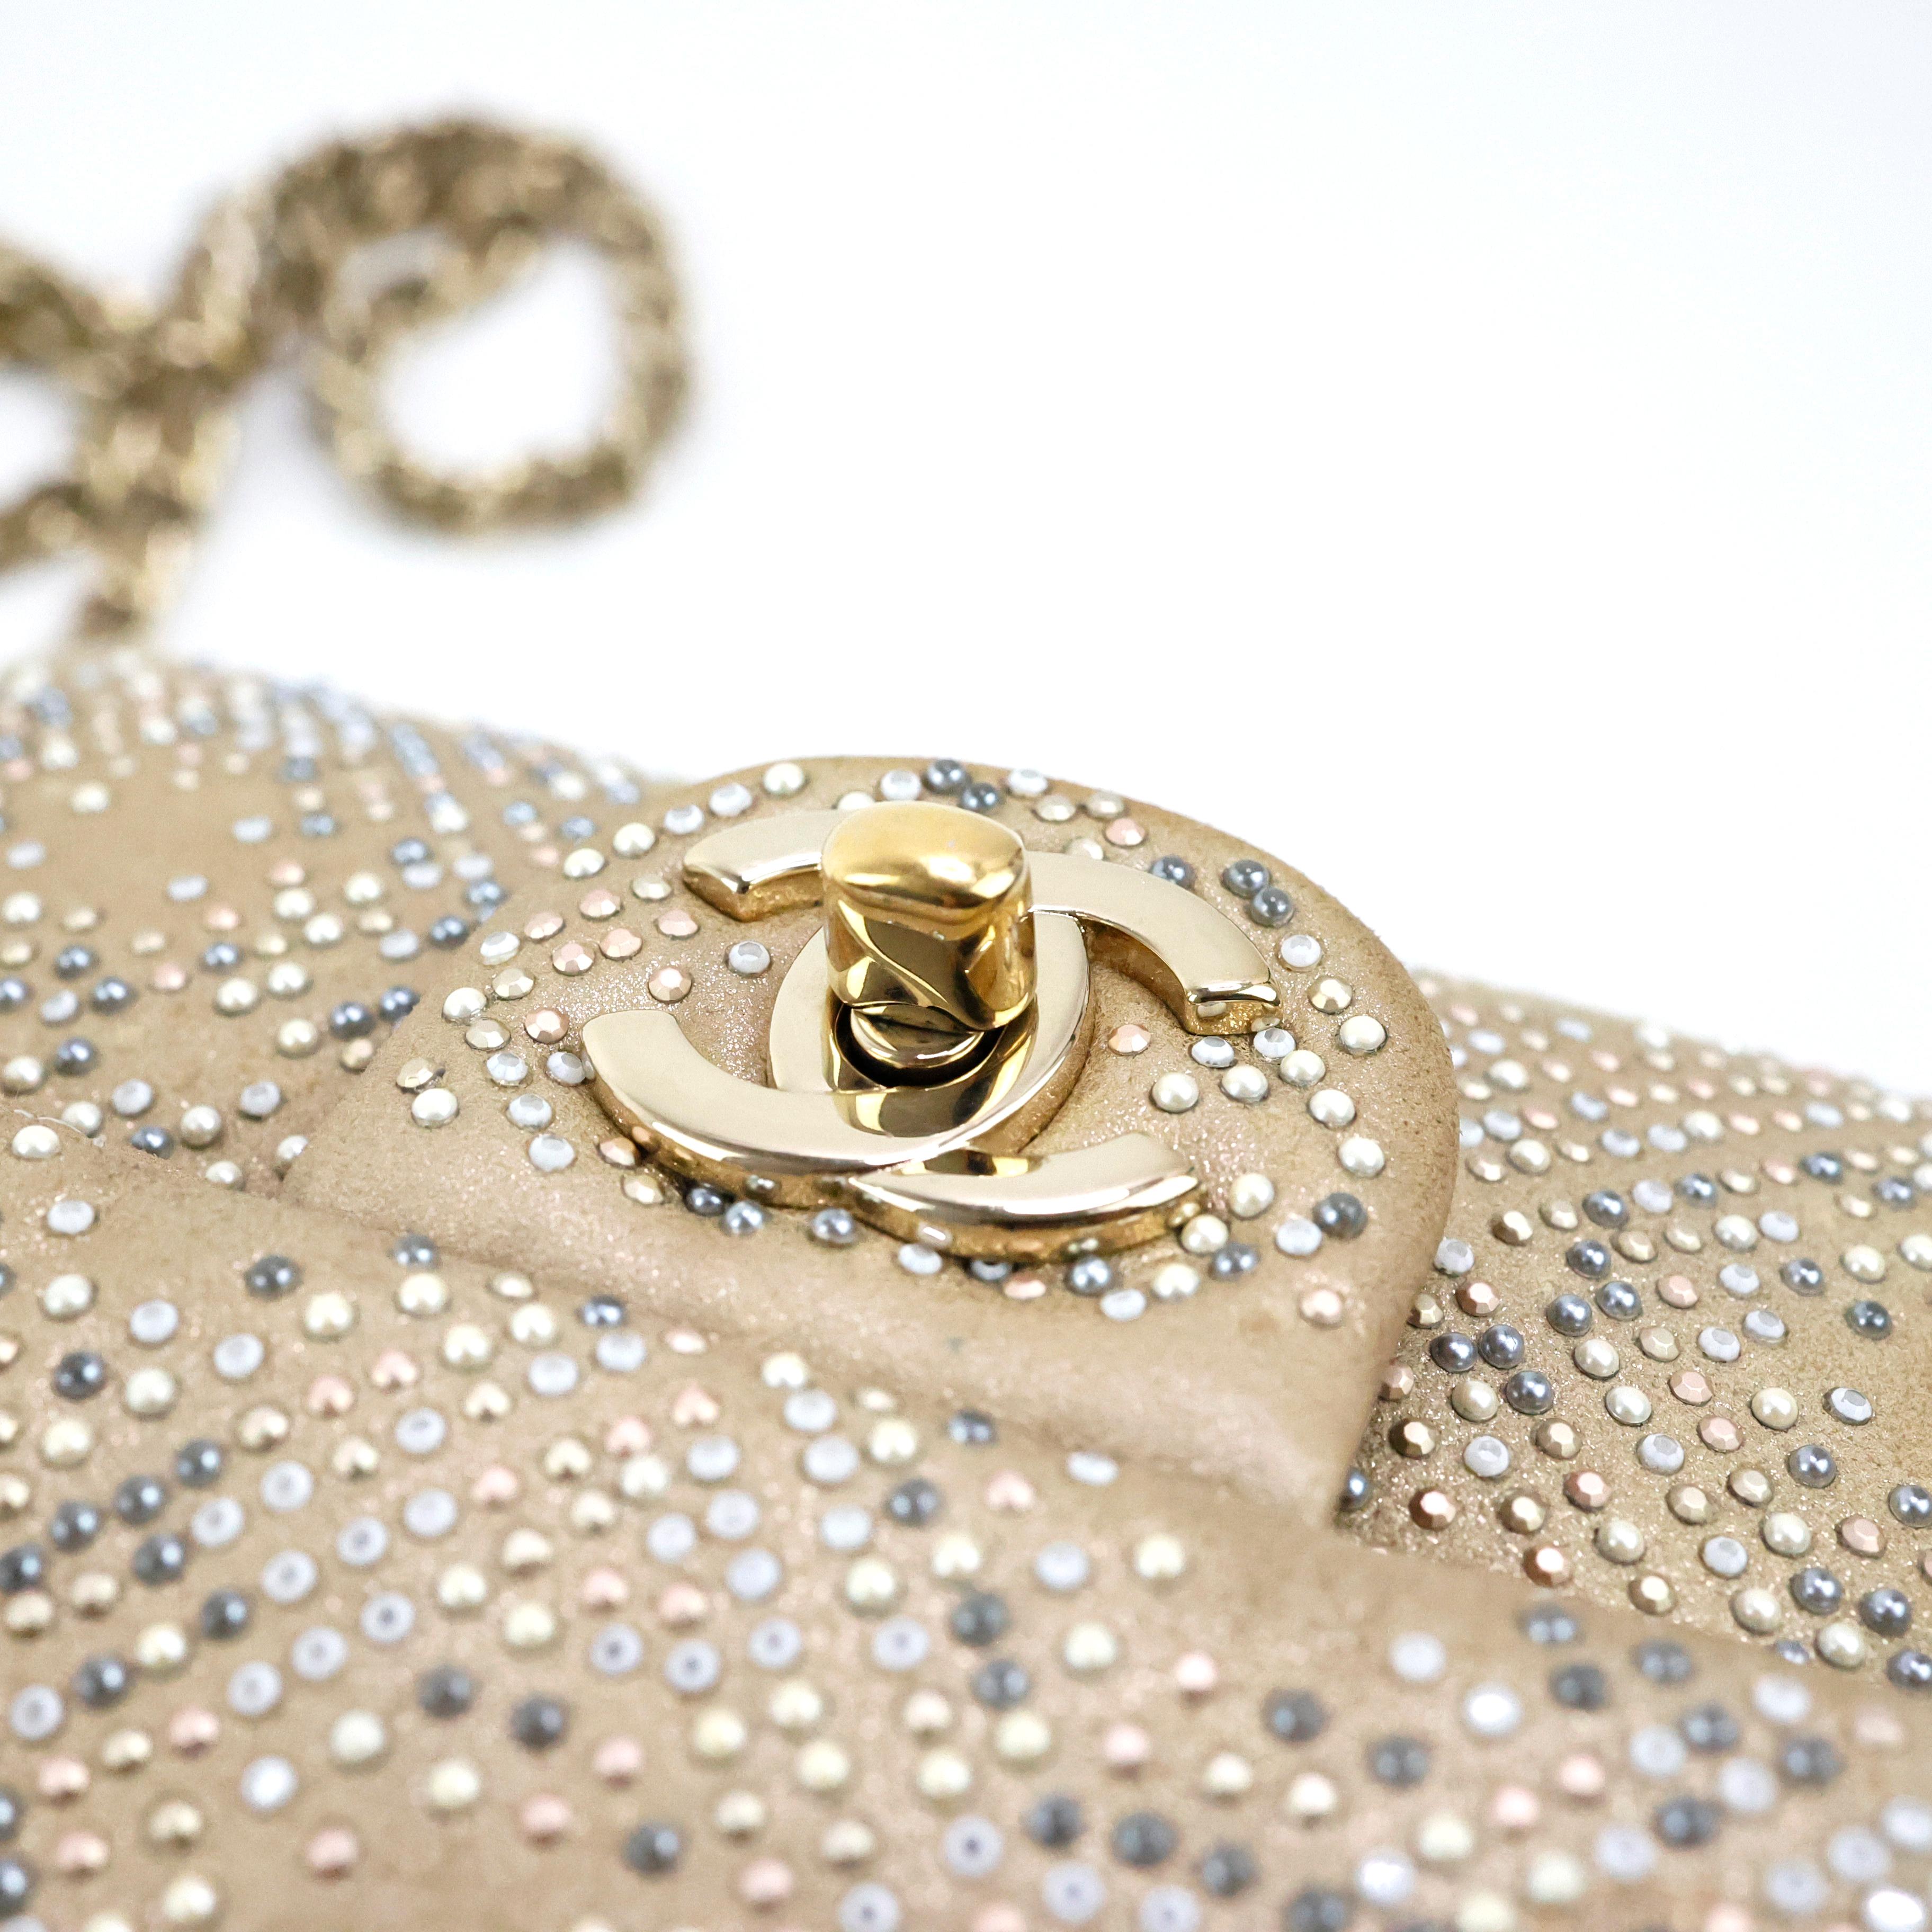 Chanel Embellished Gold Flap Bag For Sale 1